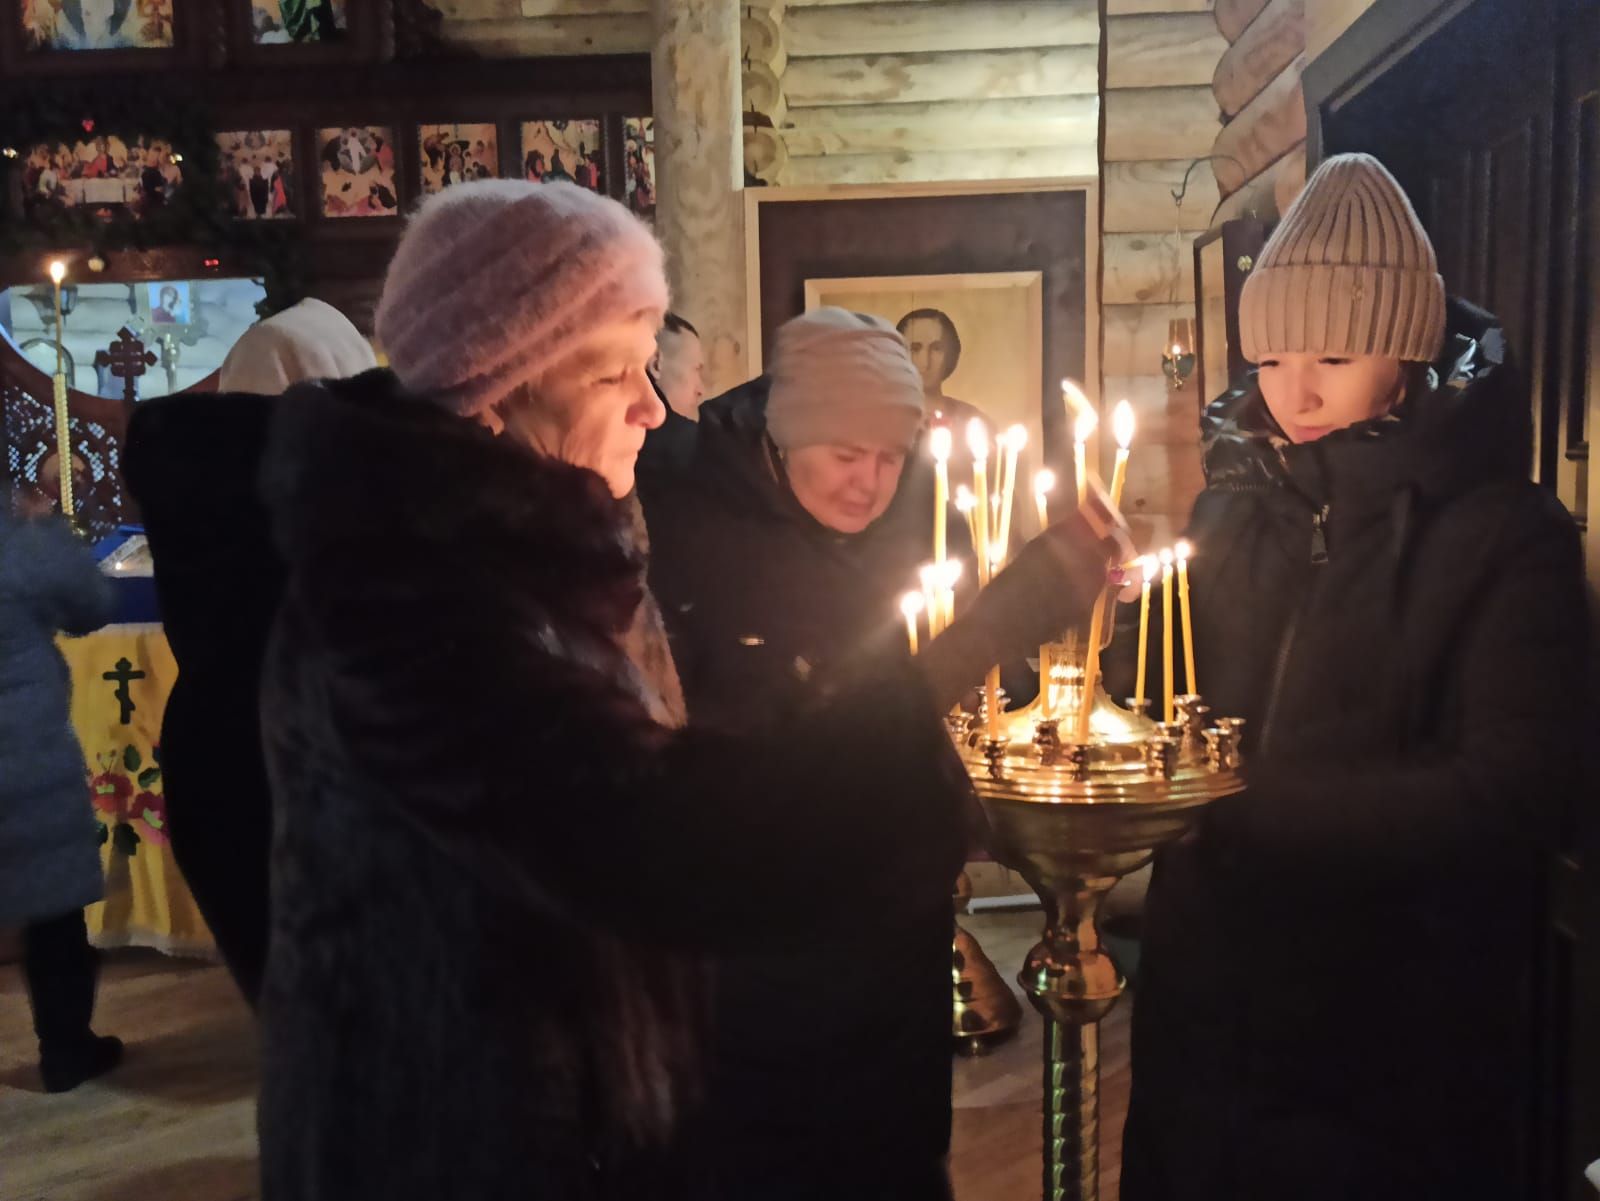 В селах Турминское и Большое Подберезье состоялись праздничные Рождественские богослужения